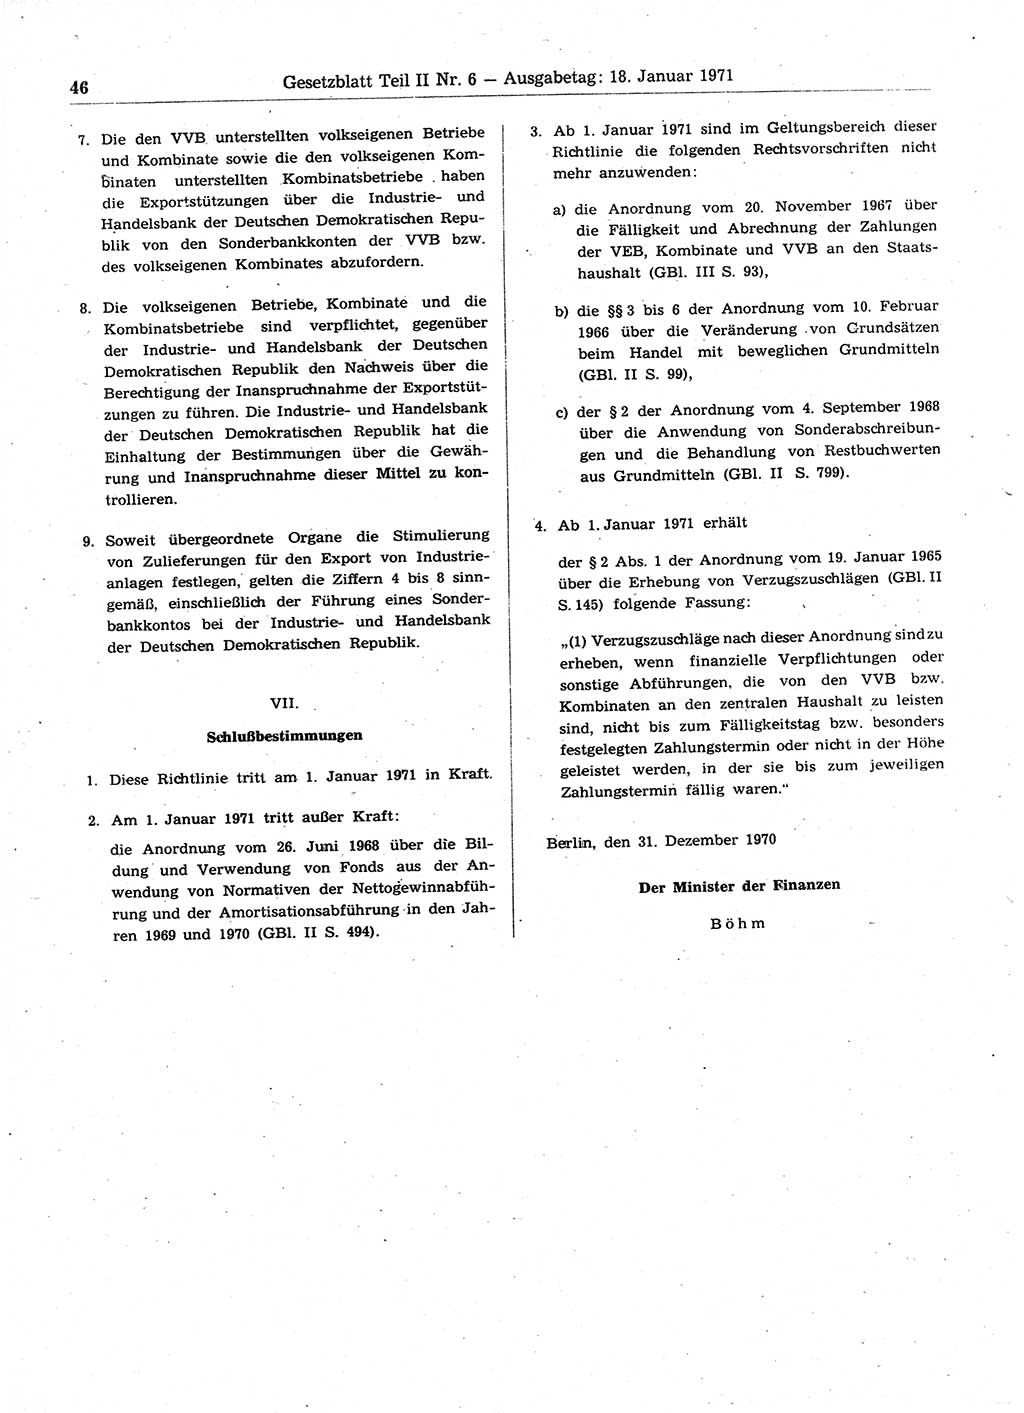 Gesetzblatt (GBl.) der Deutschen Demokratischen Republik (DDR) Teil ⅠⅠ 1971, Seite 46 (GBl. DDR ⅠⅠ 1971, S. 46)